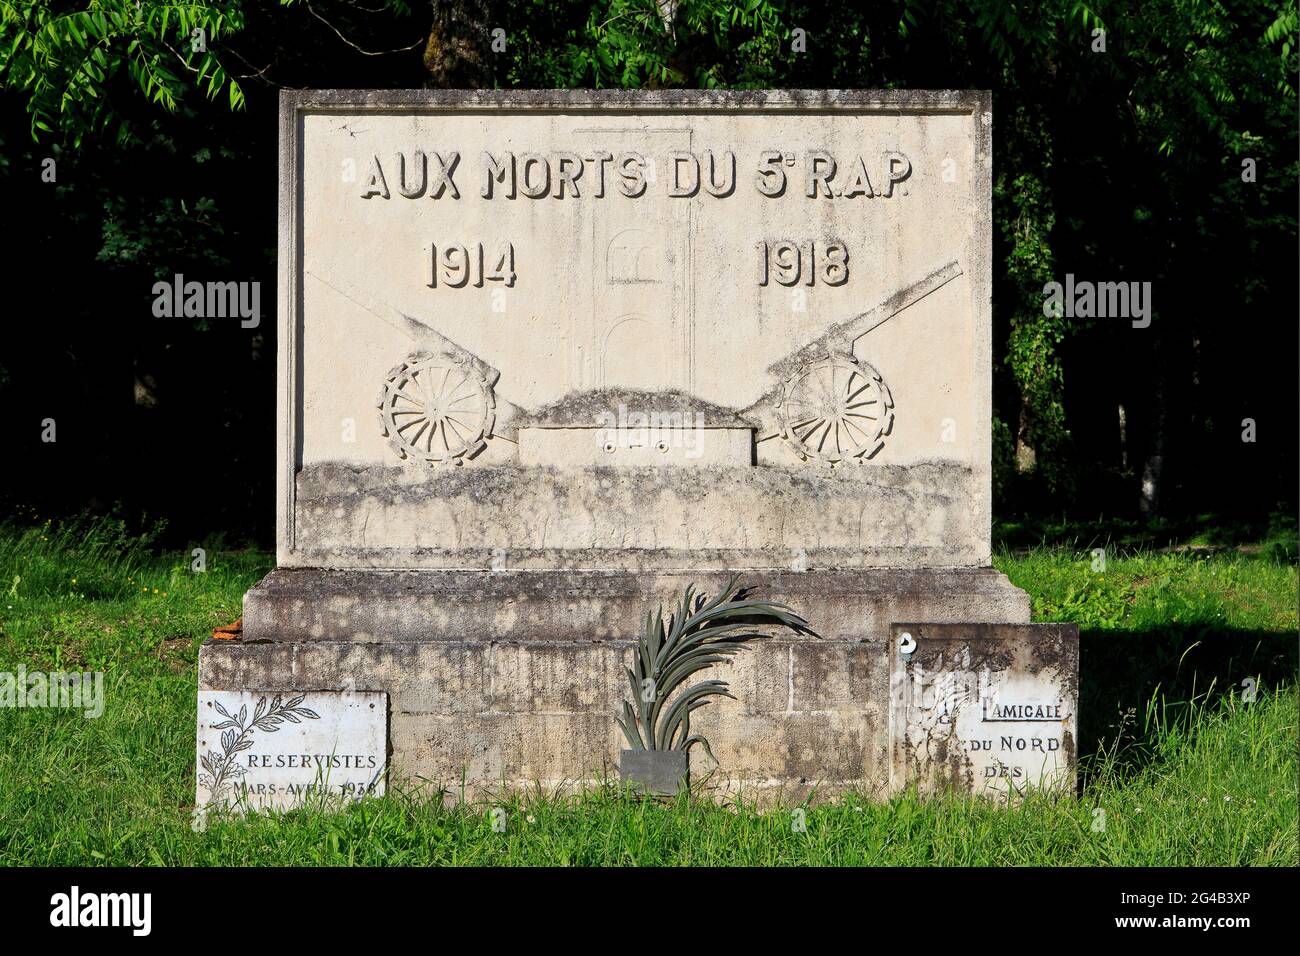 5th Artillery Regiment On Foot Memorial at Fleury-devant-Douaumont (Meuse), France Stock Photo